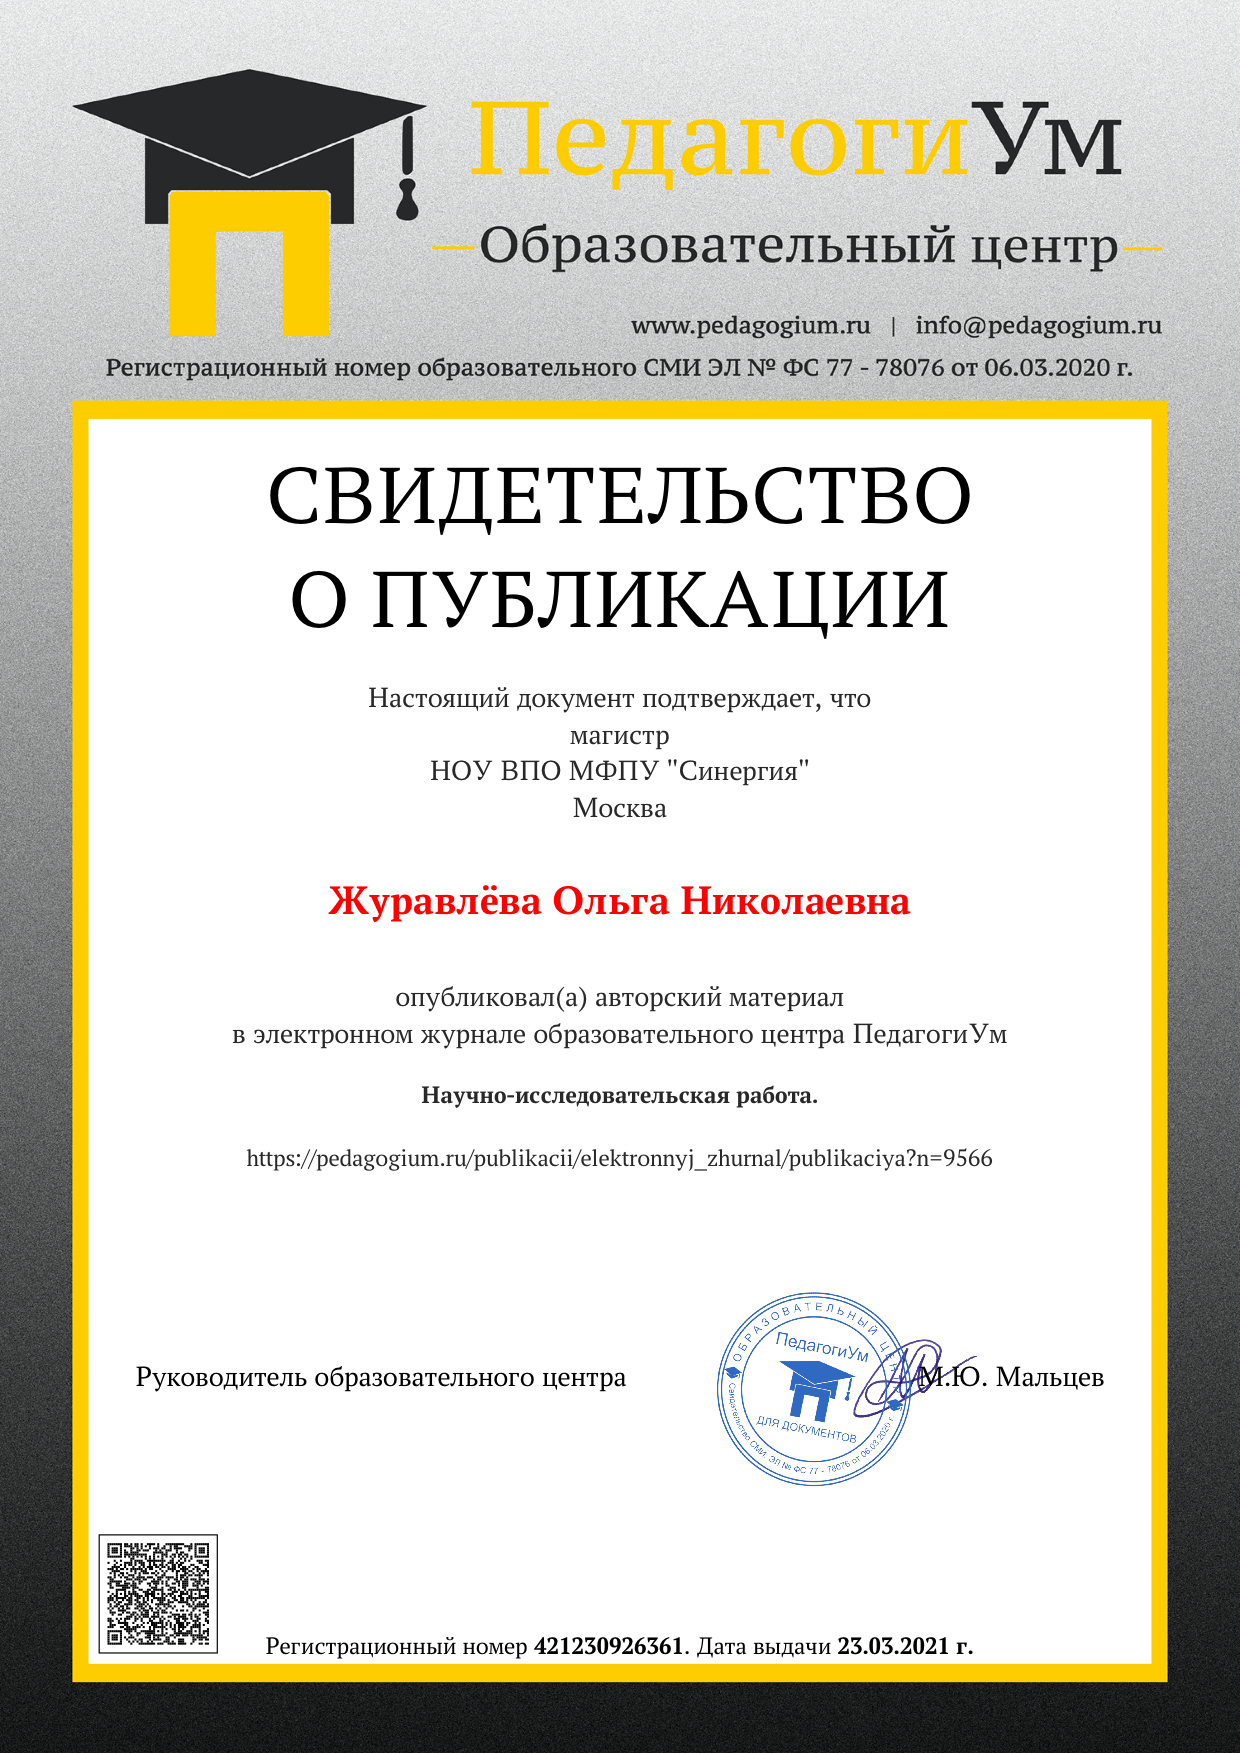 Образец документа за публикацию в электронном журнале ПедагогиУм.